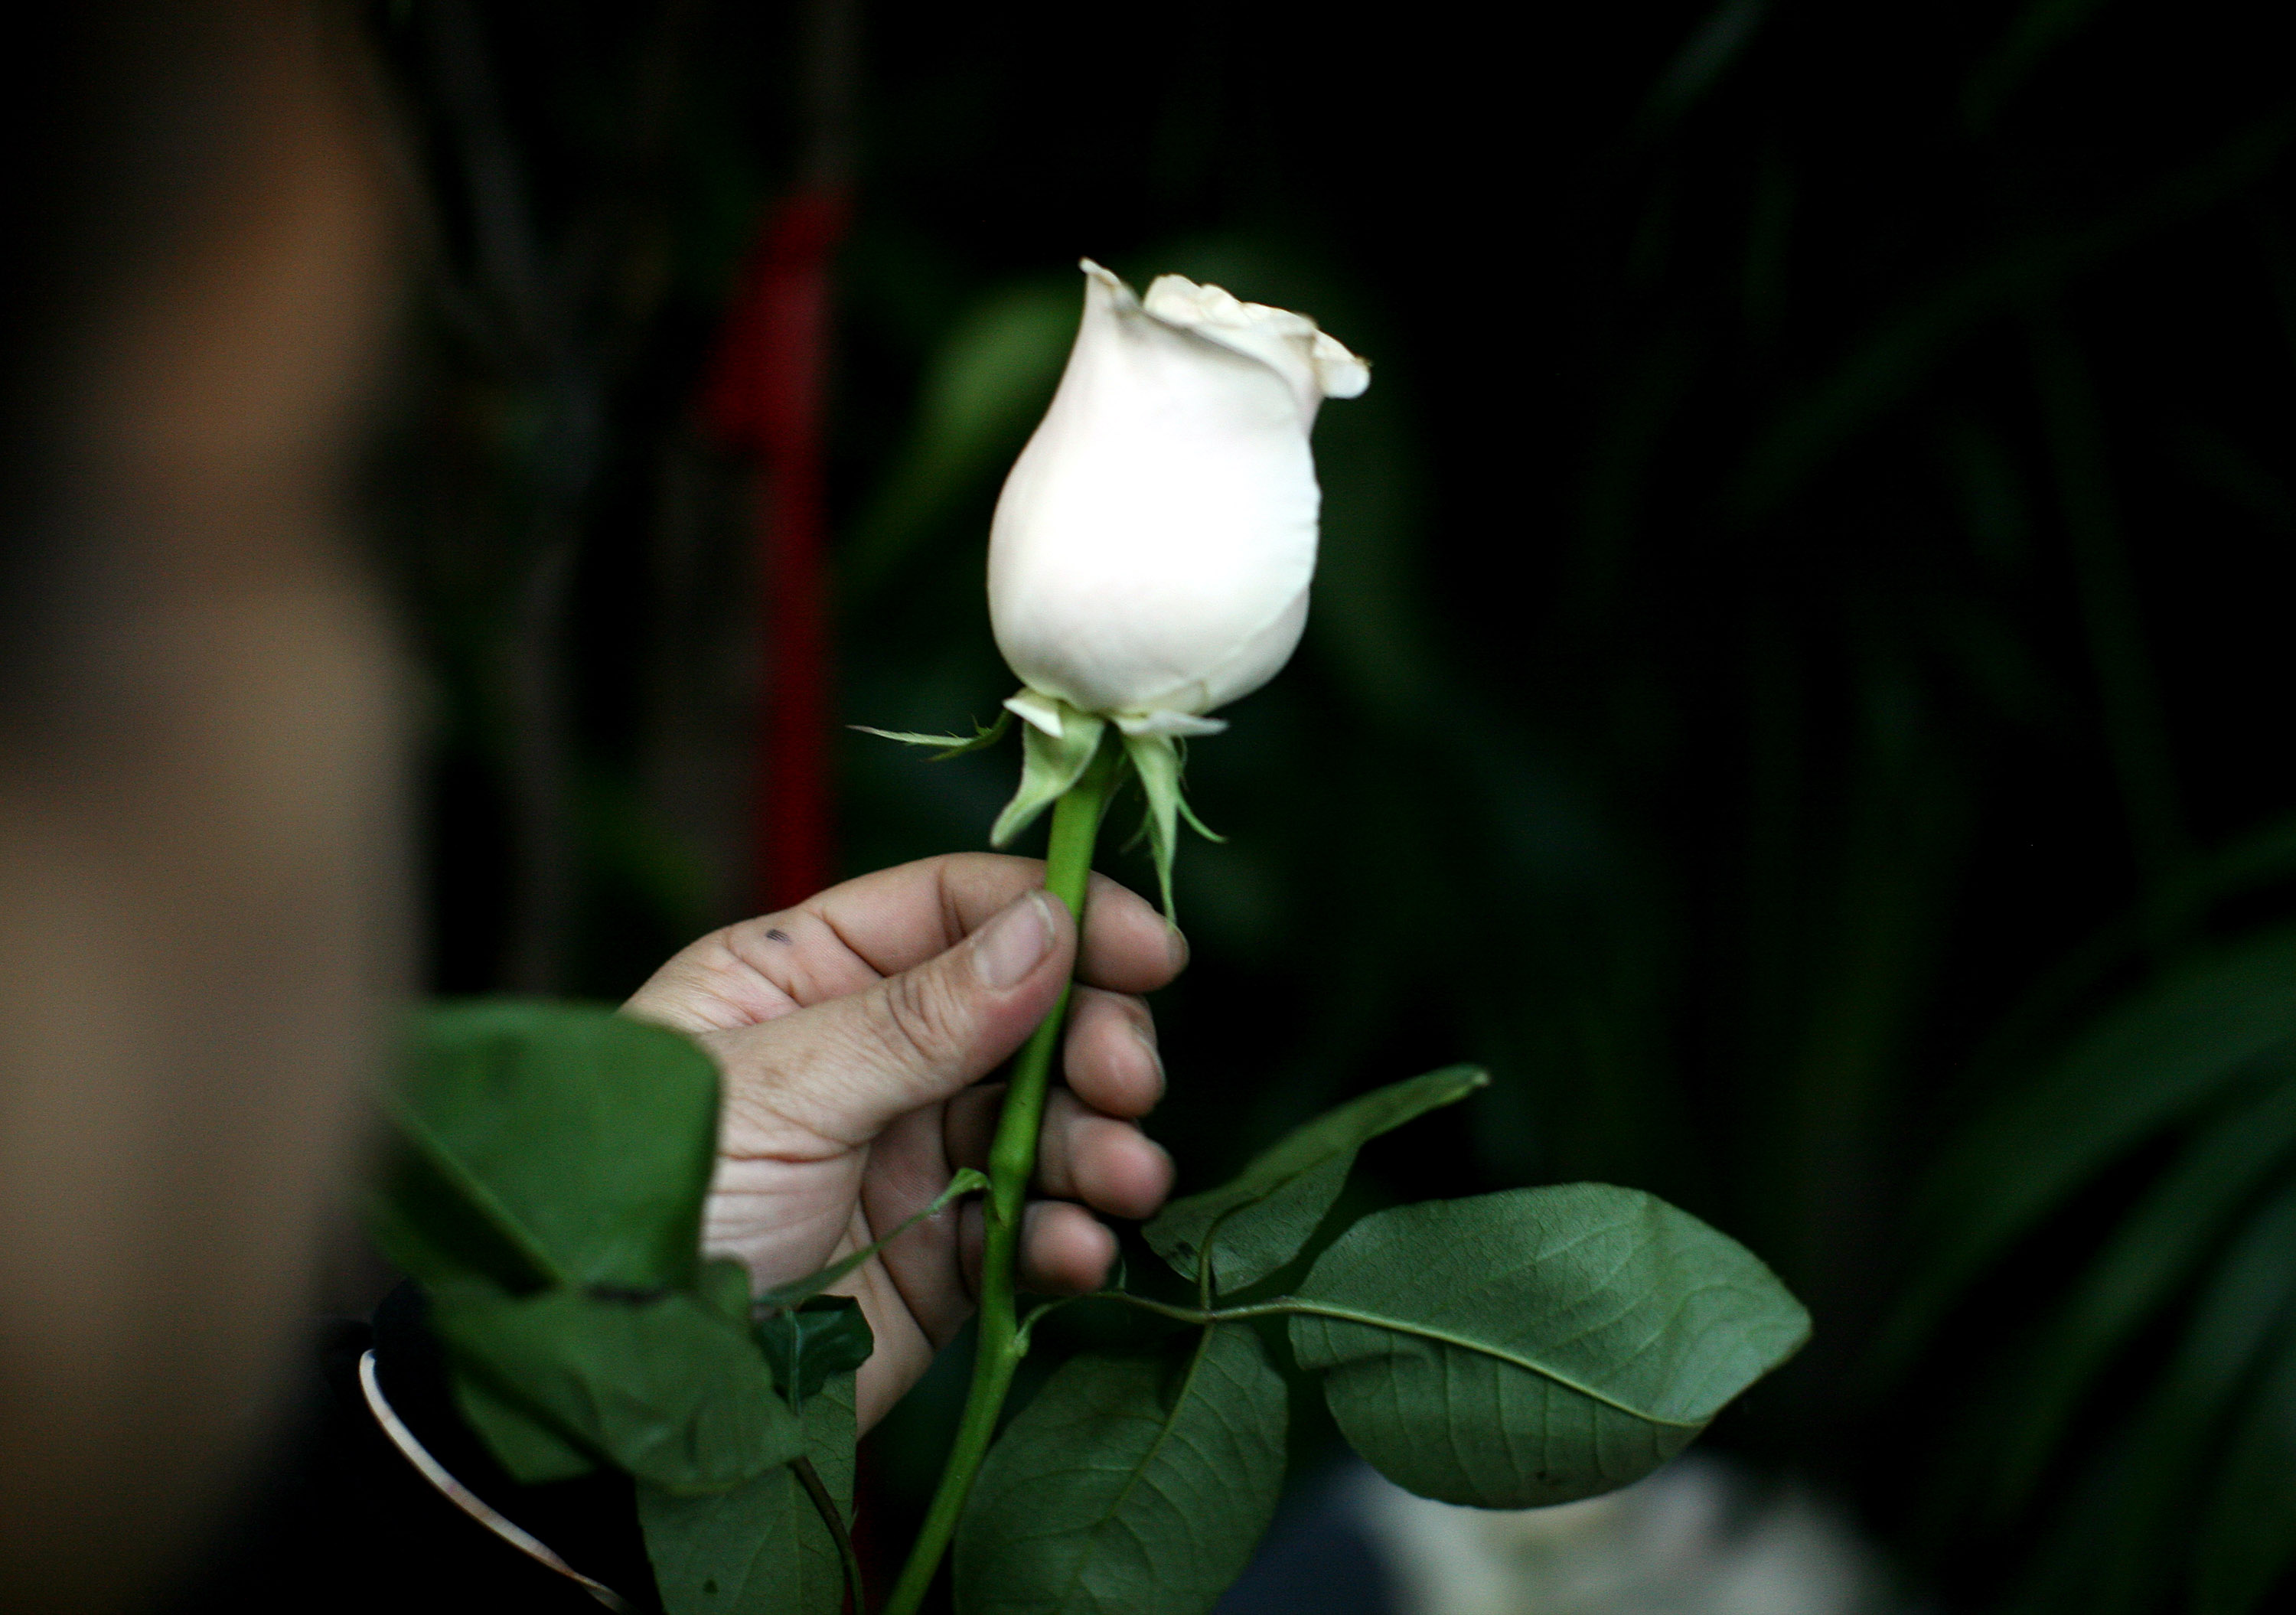 我留意到了拓印在帕面上的一朵白玫瑰，不僅僅是花瓣已見零落，色澤也褪了……